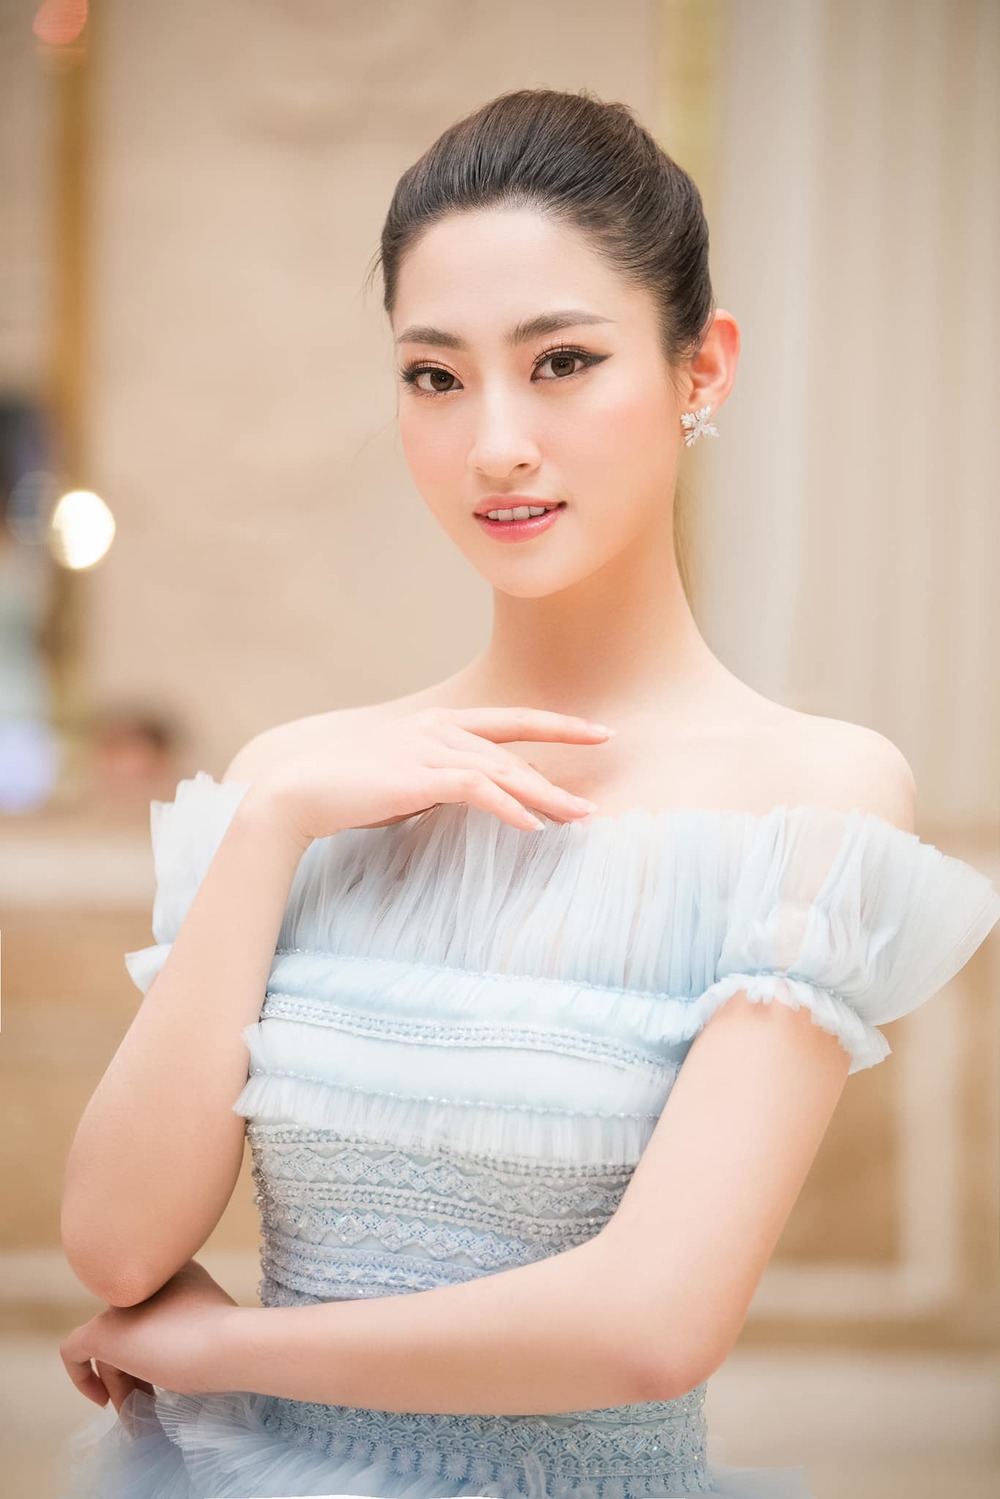  
Lương Thùy Linh trong chiếc váy xanh công chúa. 